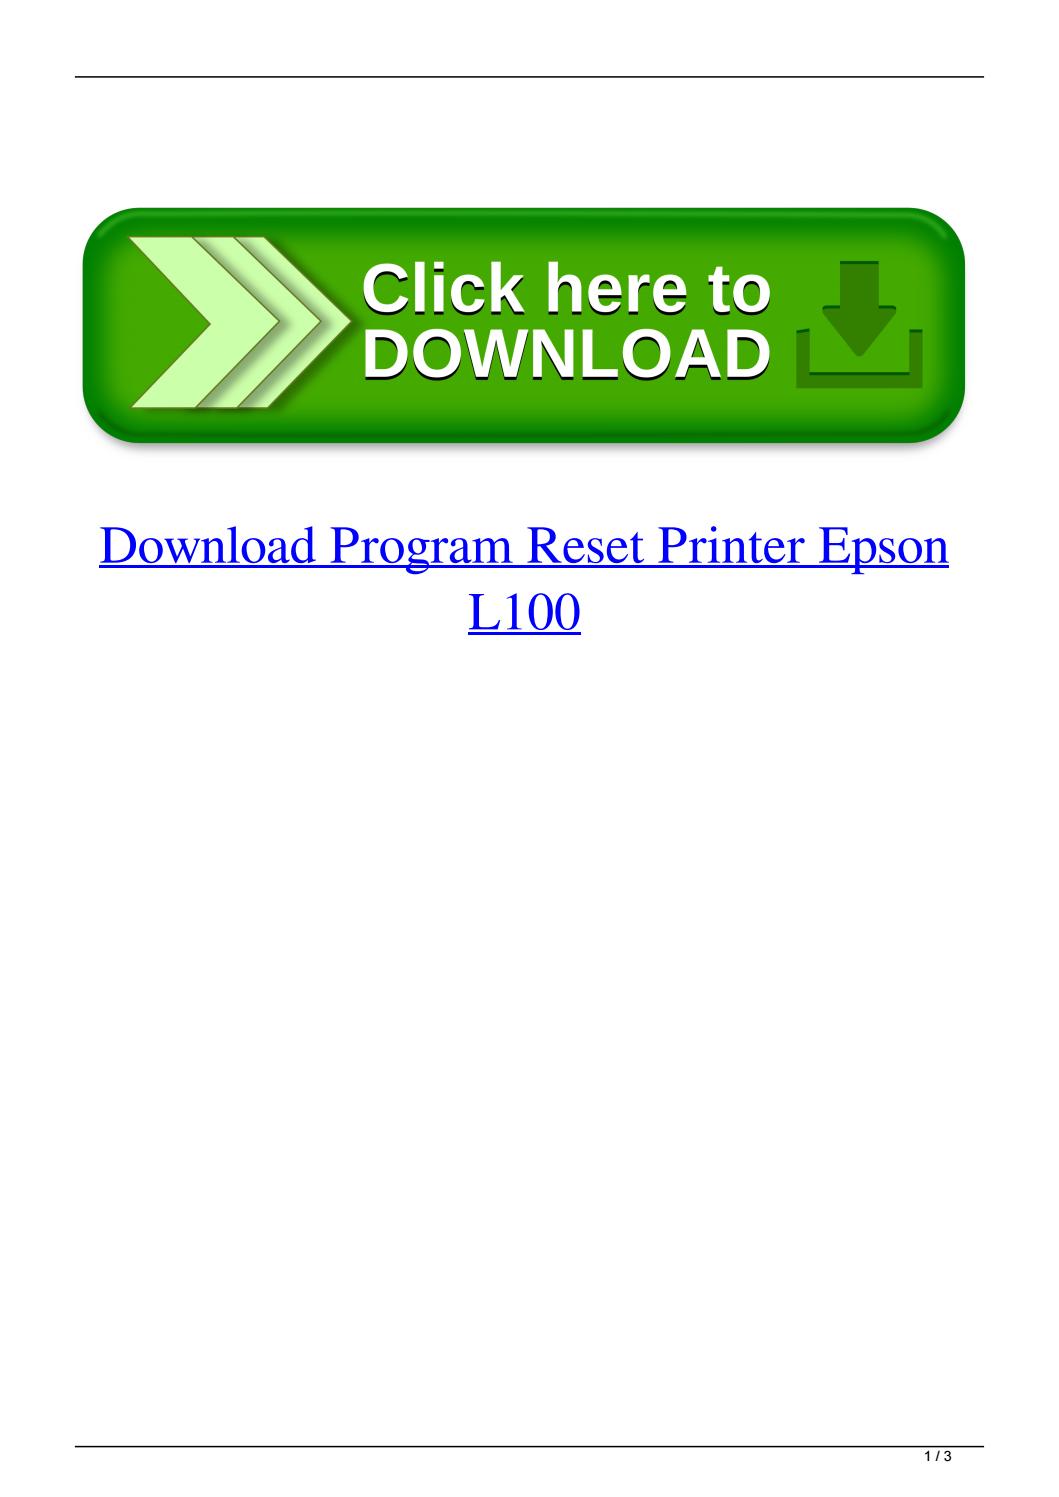 Software Resetter Printer Epson L100